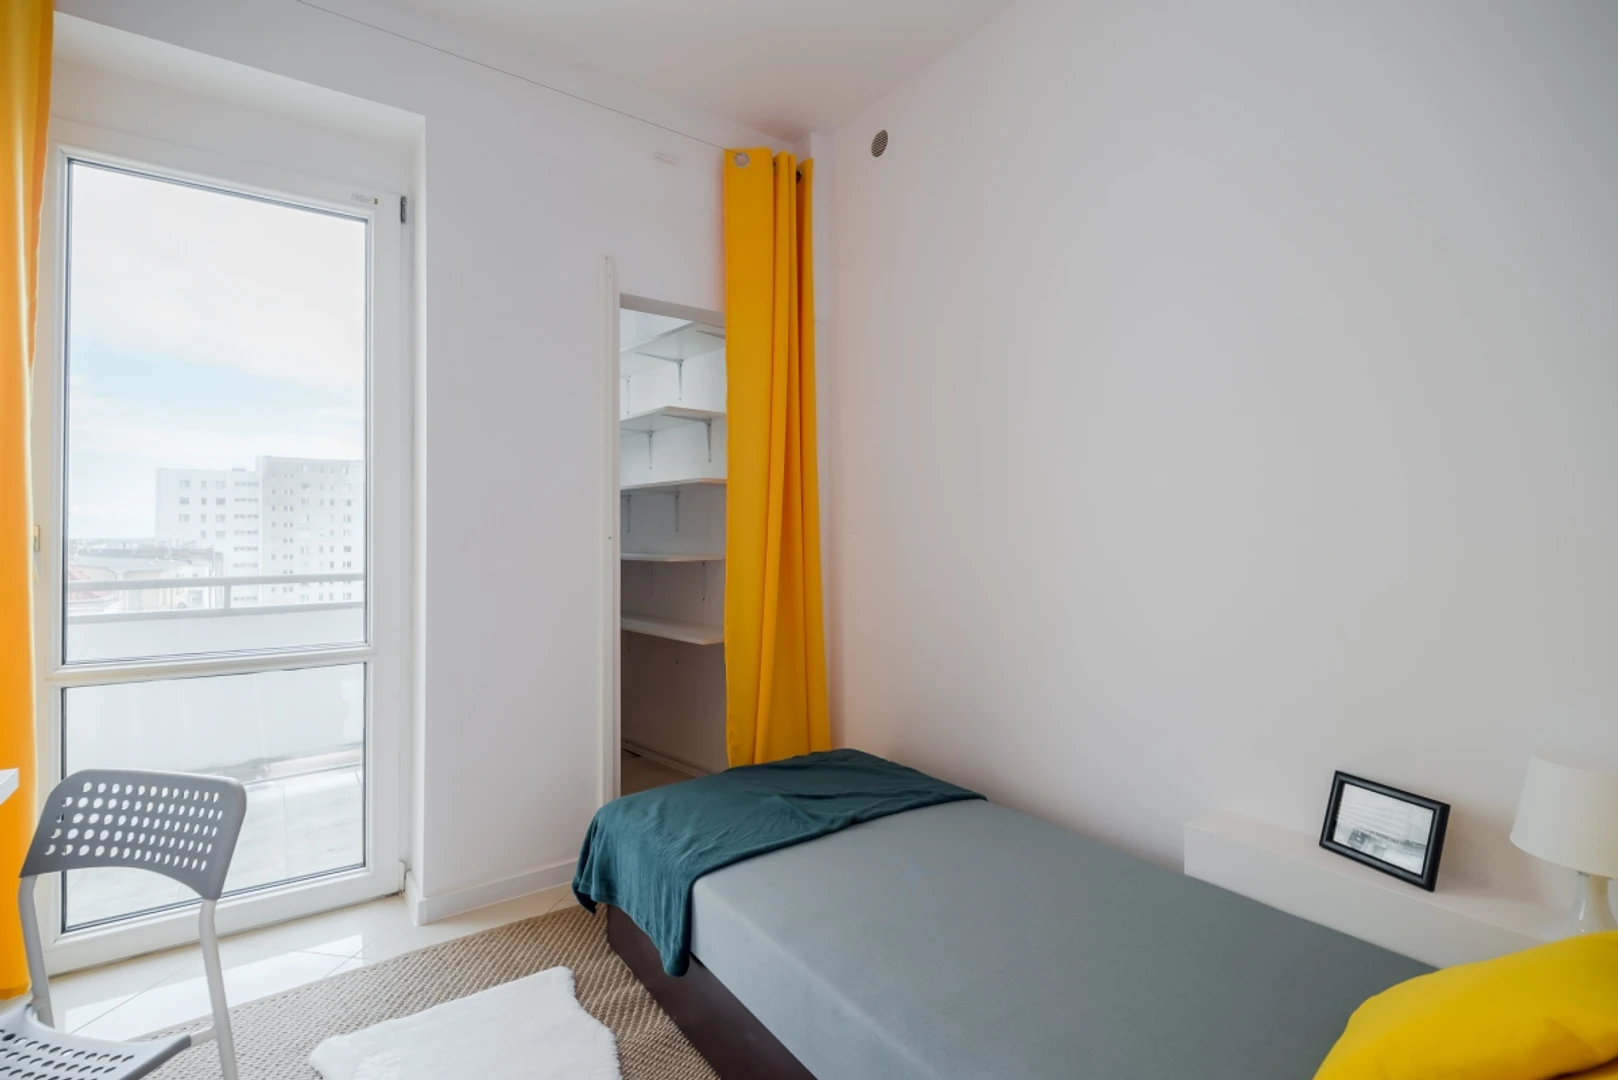 Gdynia de çift kişilik yataklı kiralık oda